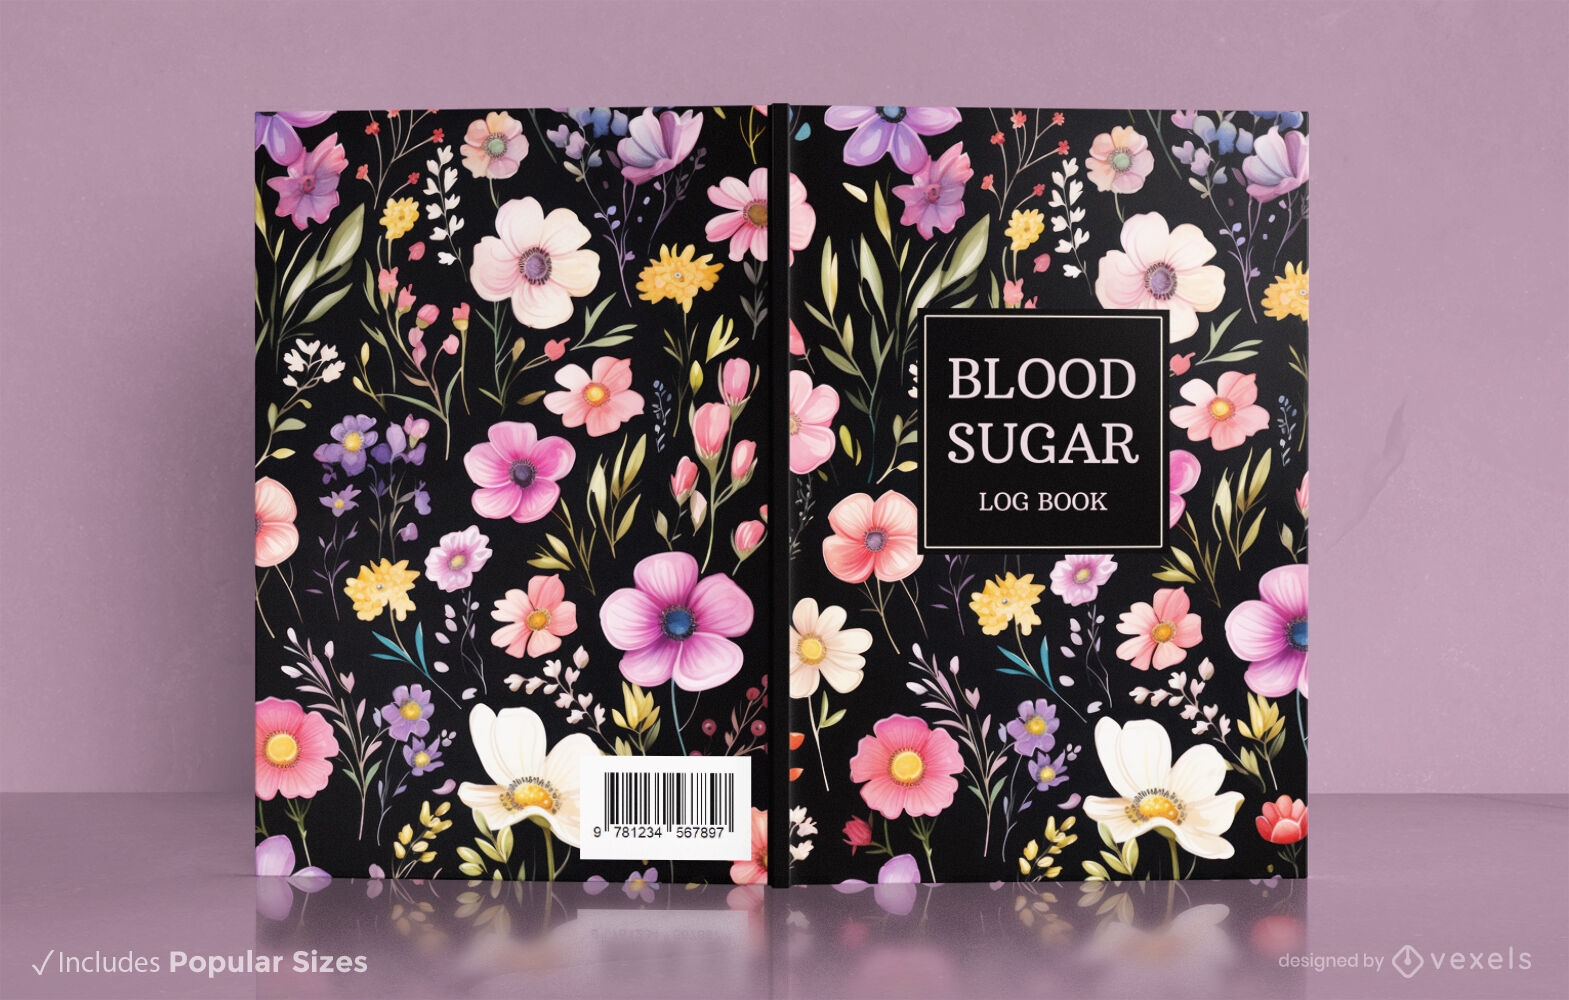 Dise?o floral de portada de libro sobre az?car en sangre.